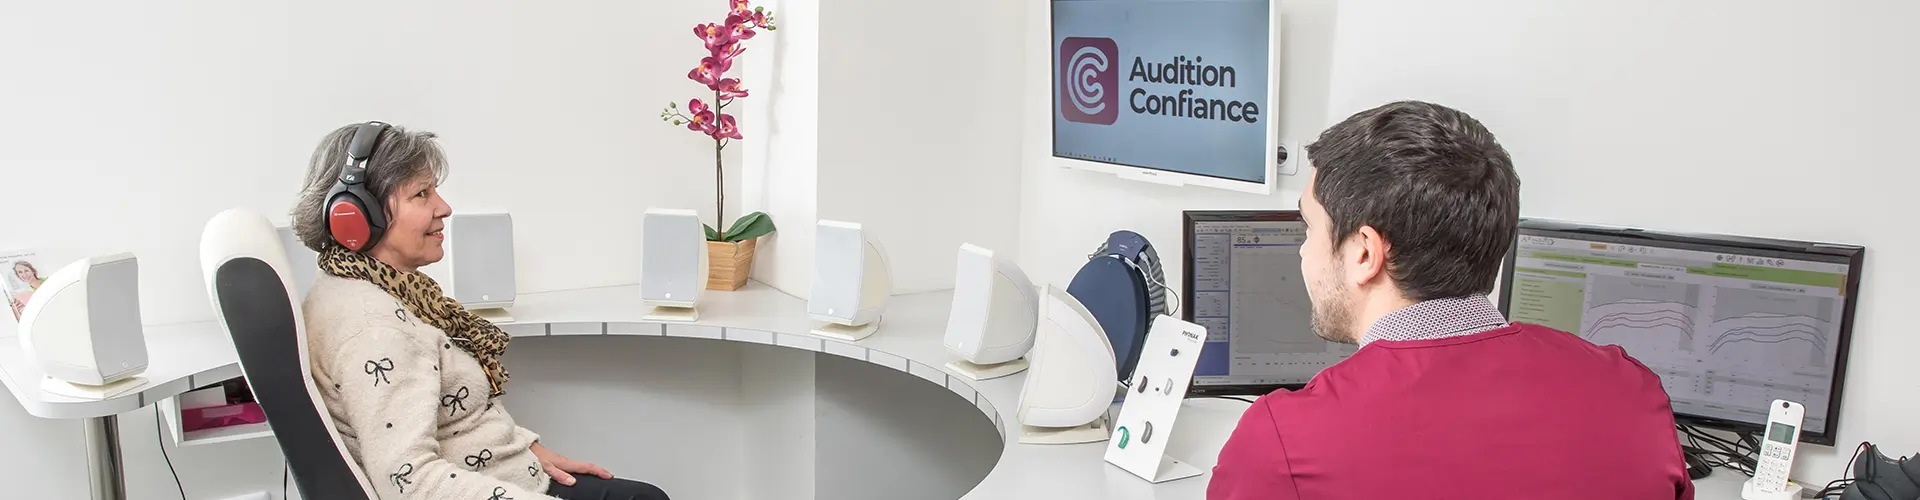 Audition Confiance - Votre laboratoire d'analyses auditives